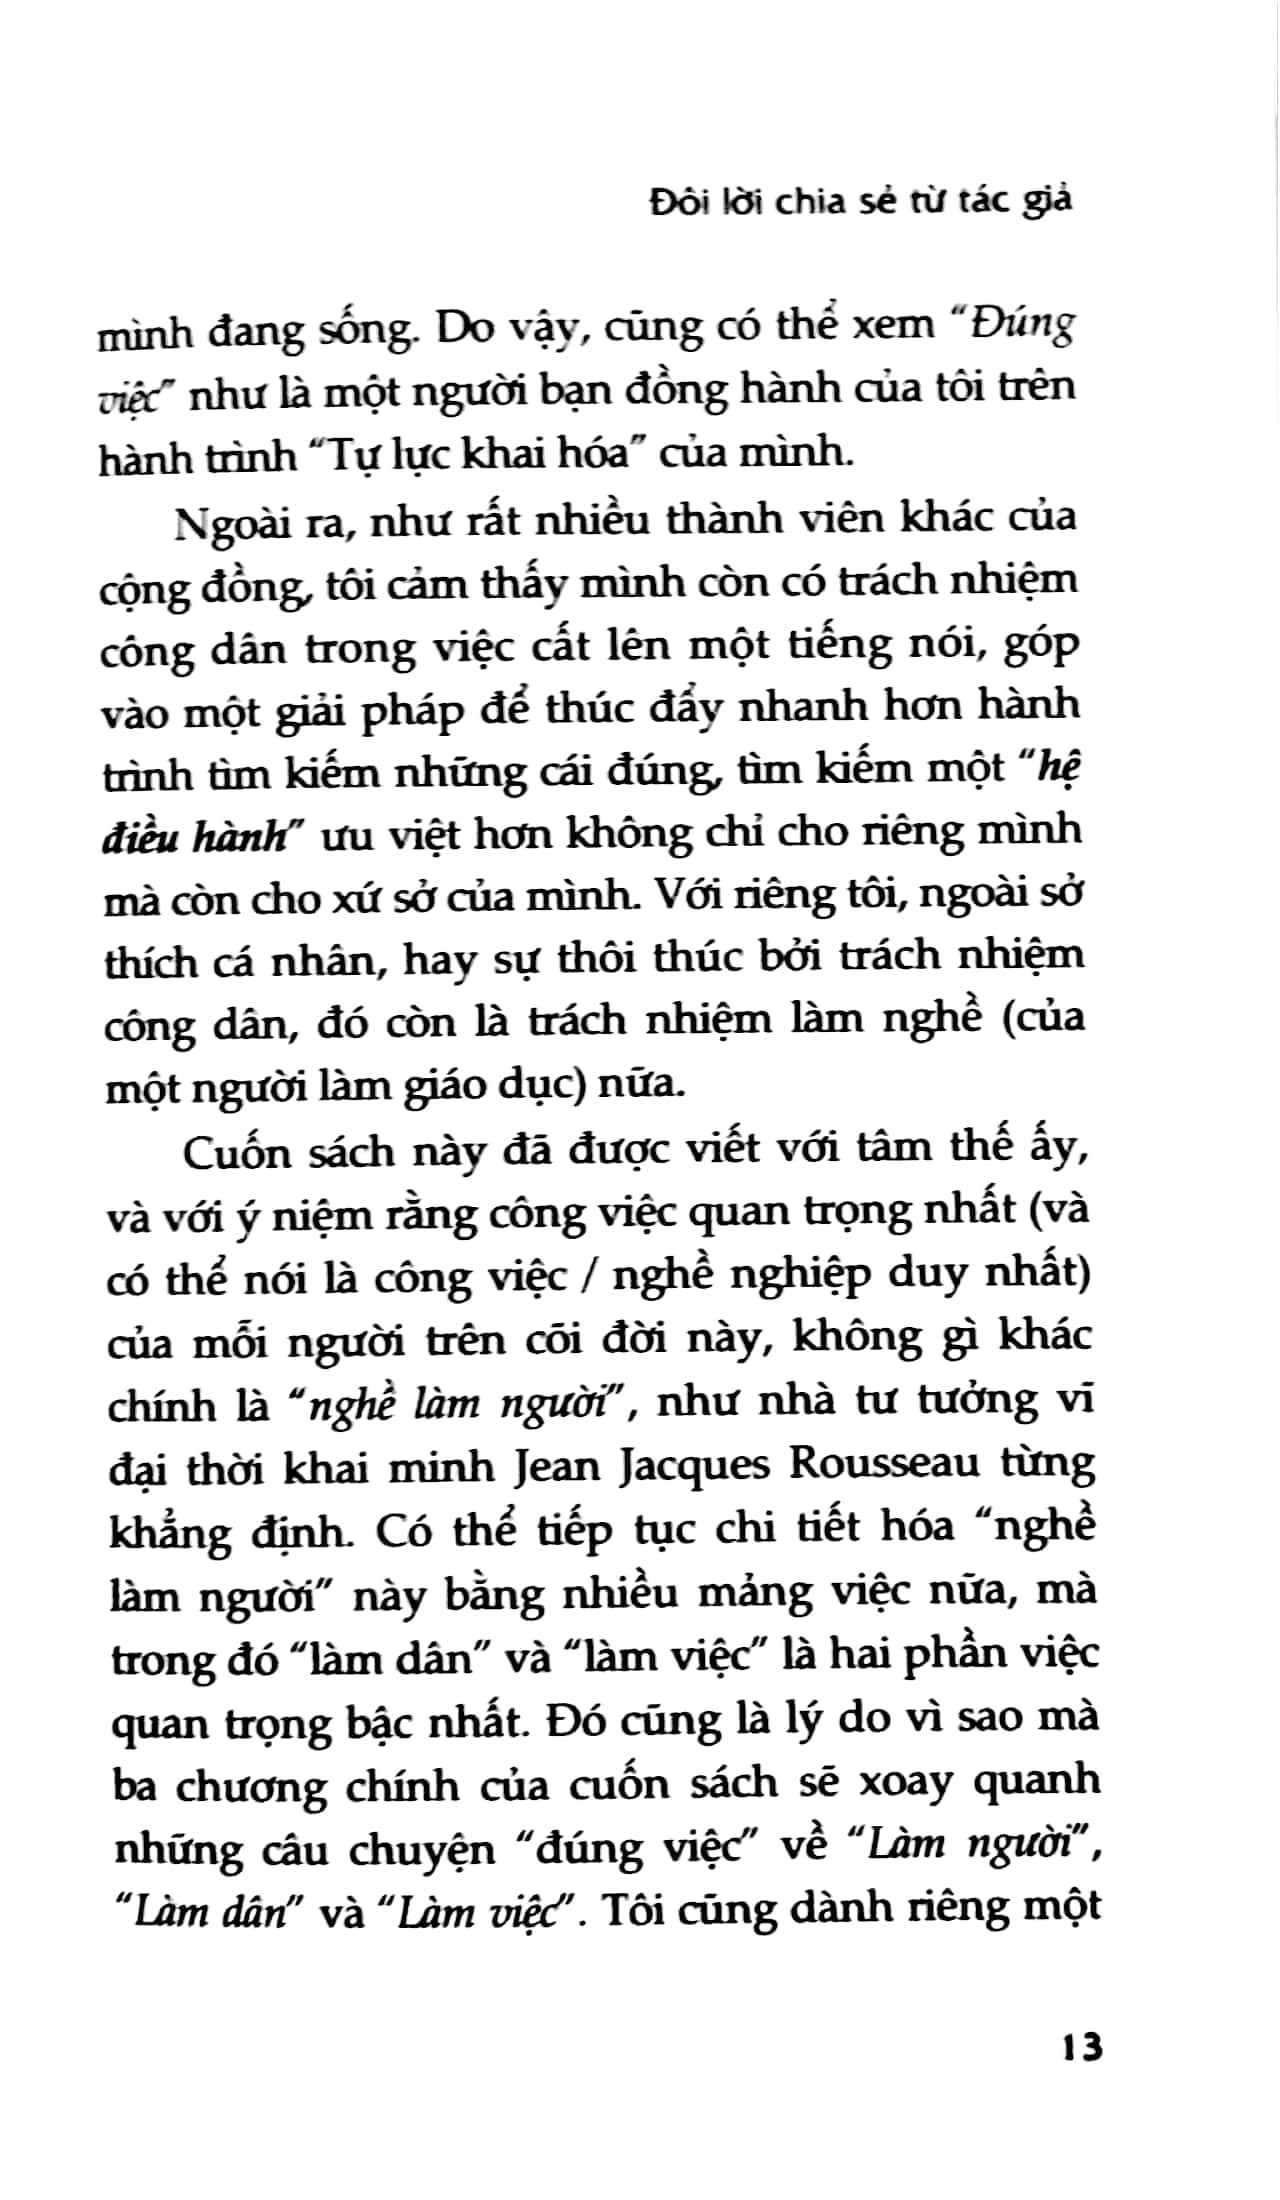 Đúng Việc - Một Góc Nhìn Về Câu Chuyện Khai Minh - Bìa Cứng PDF